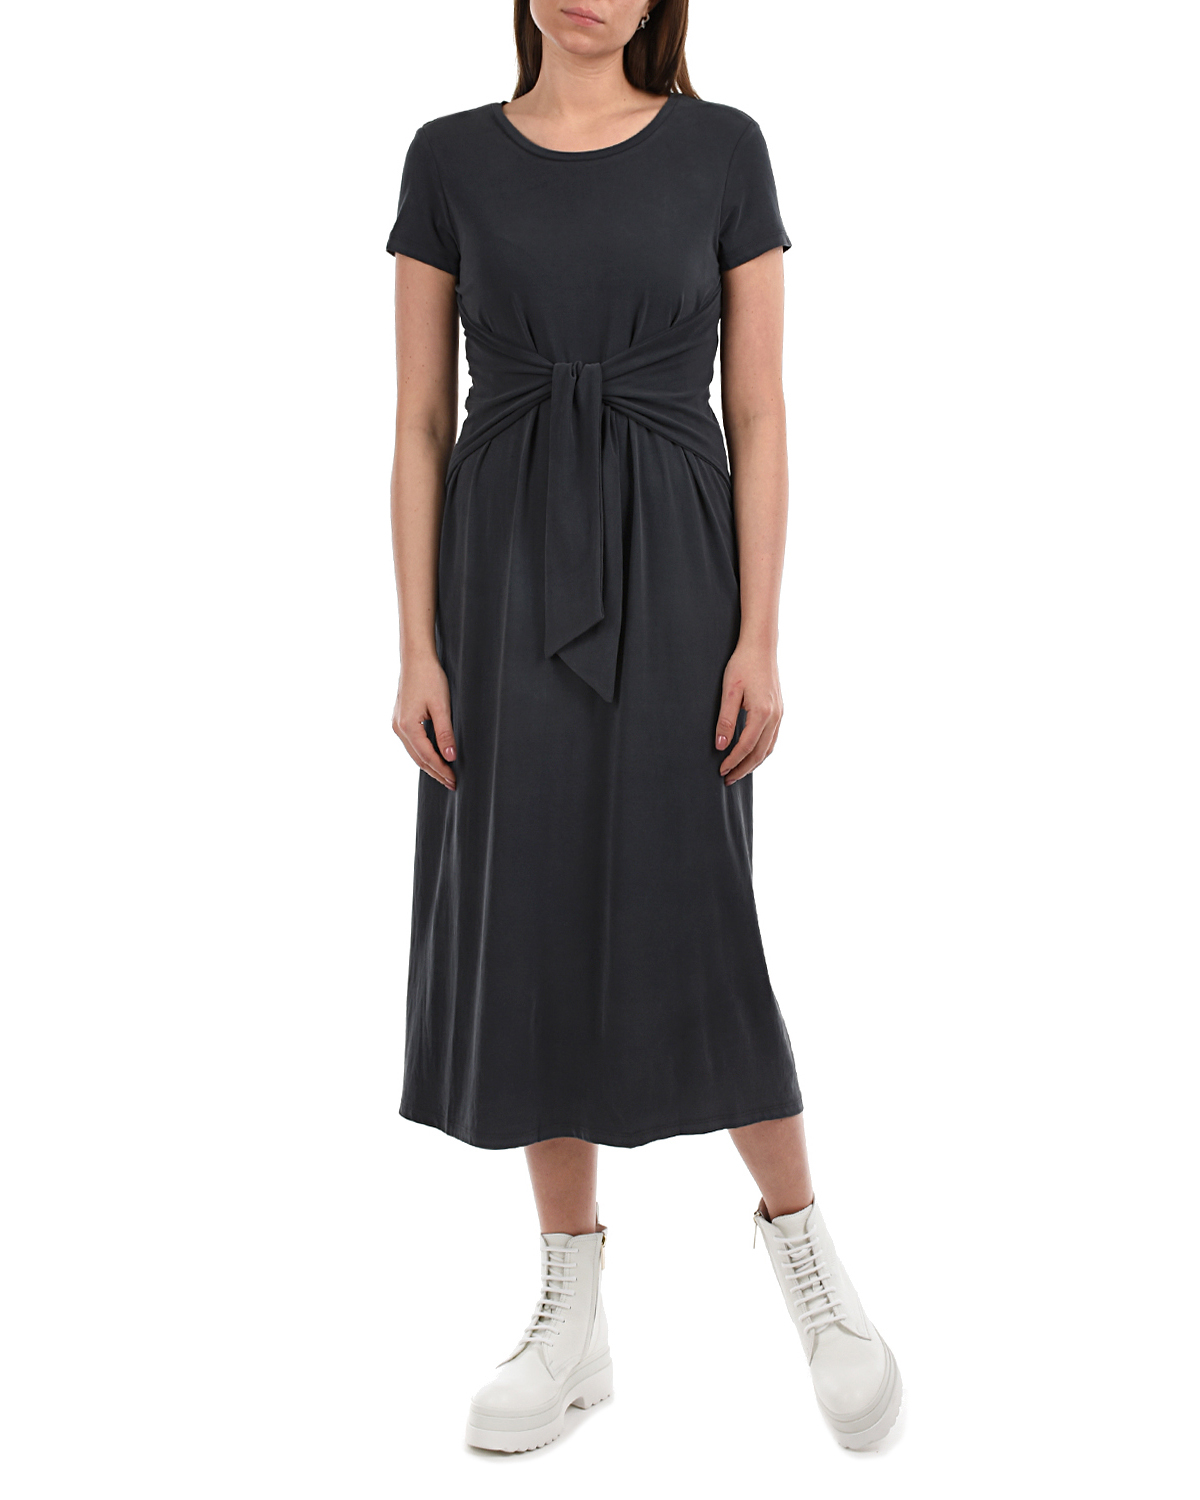 Темно-серое платье с короткими рукавами Attesa, размер 38, цвет серый - фото 4